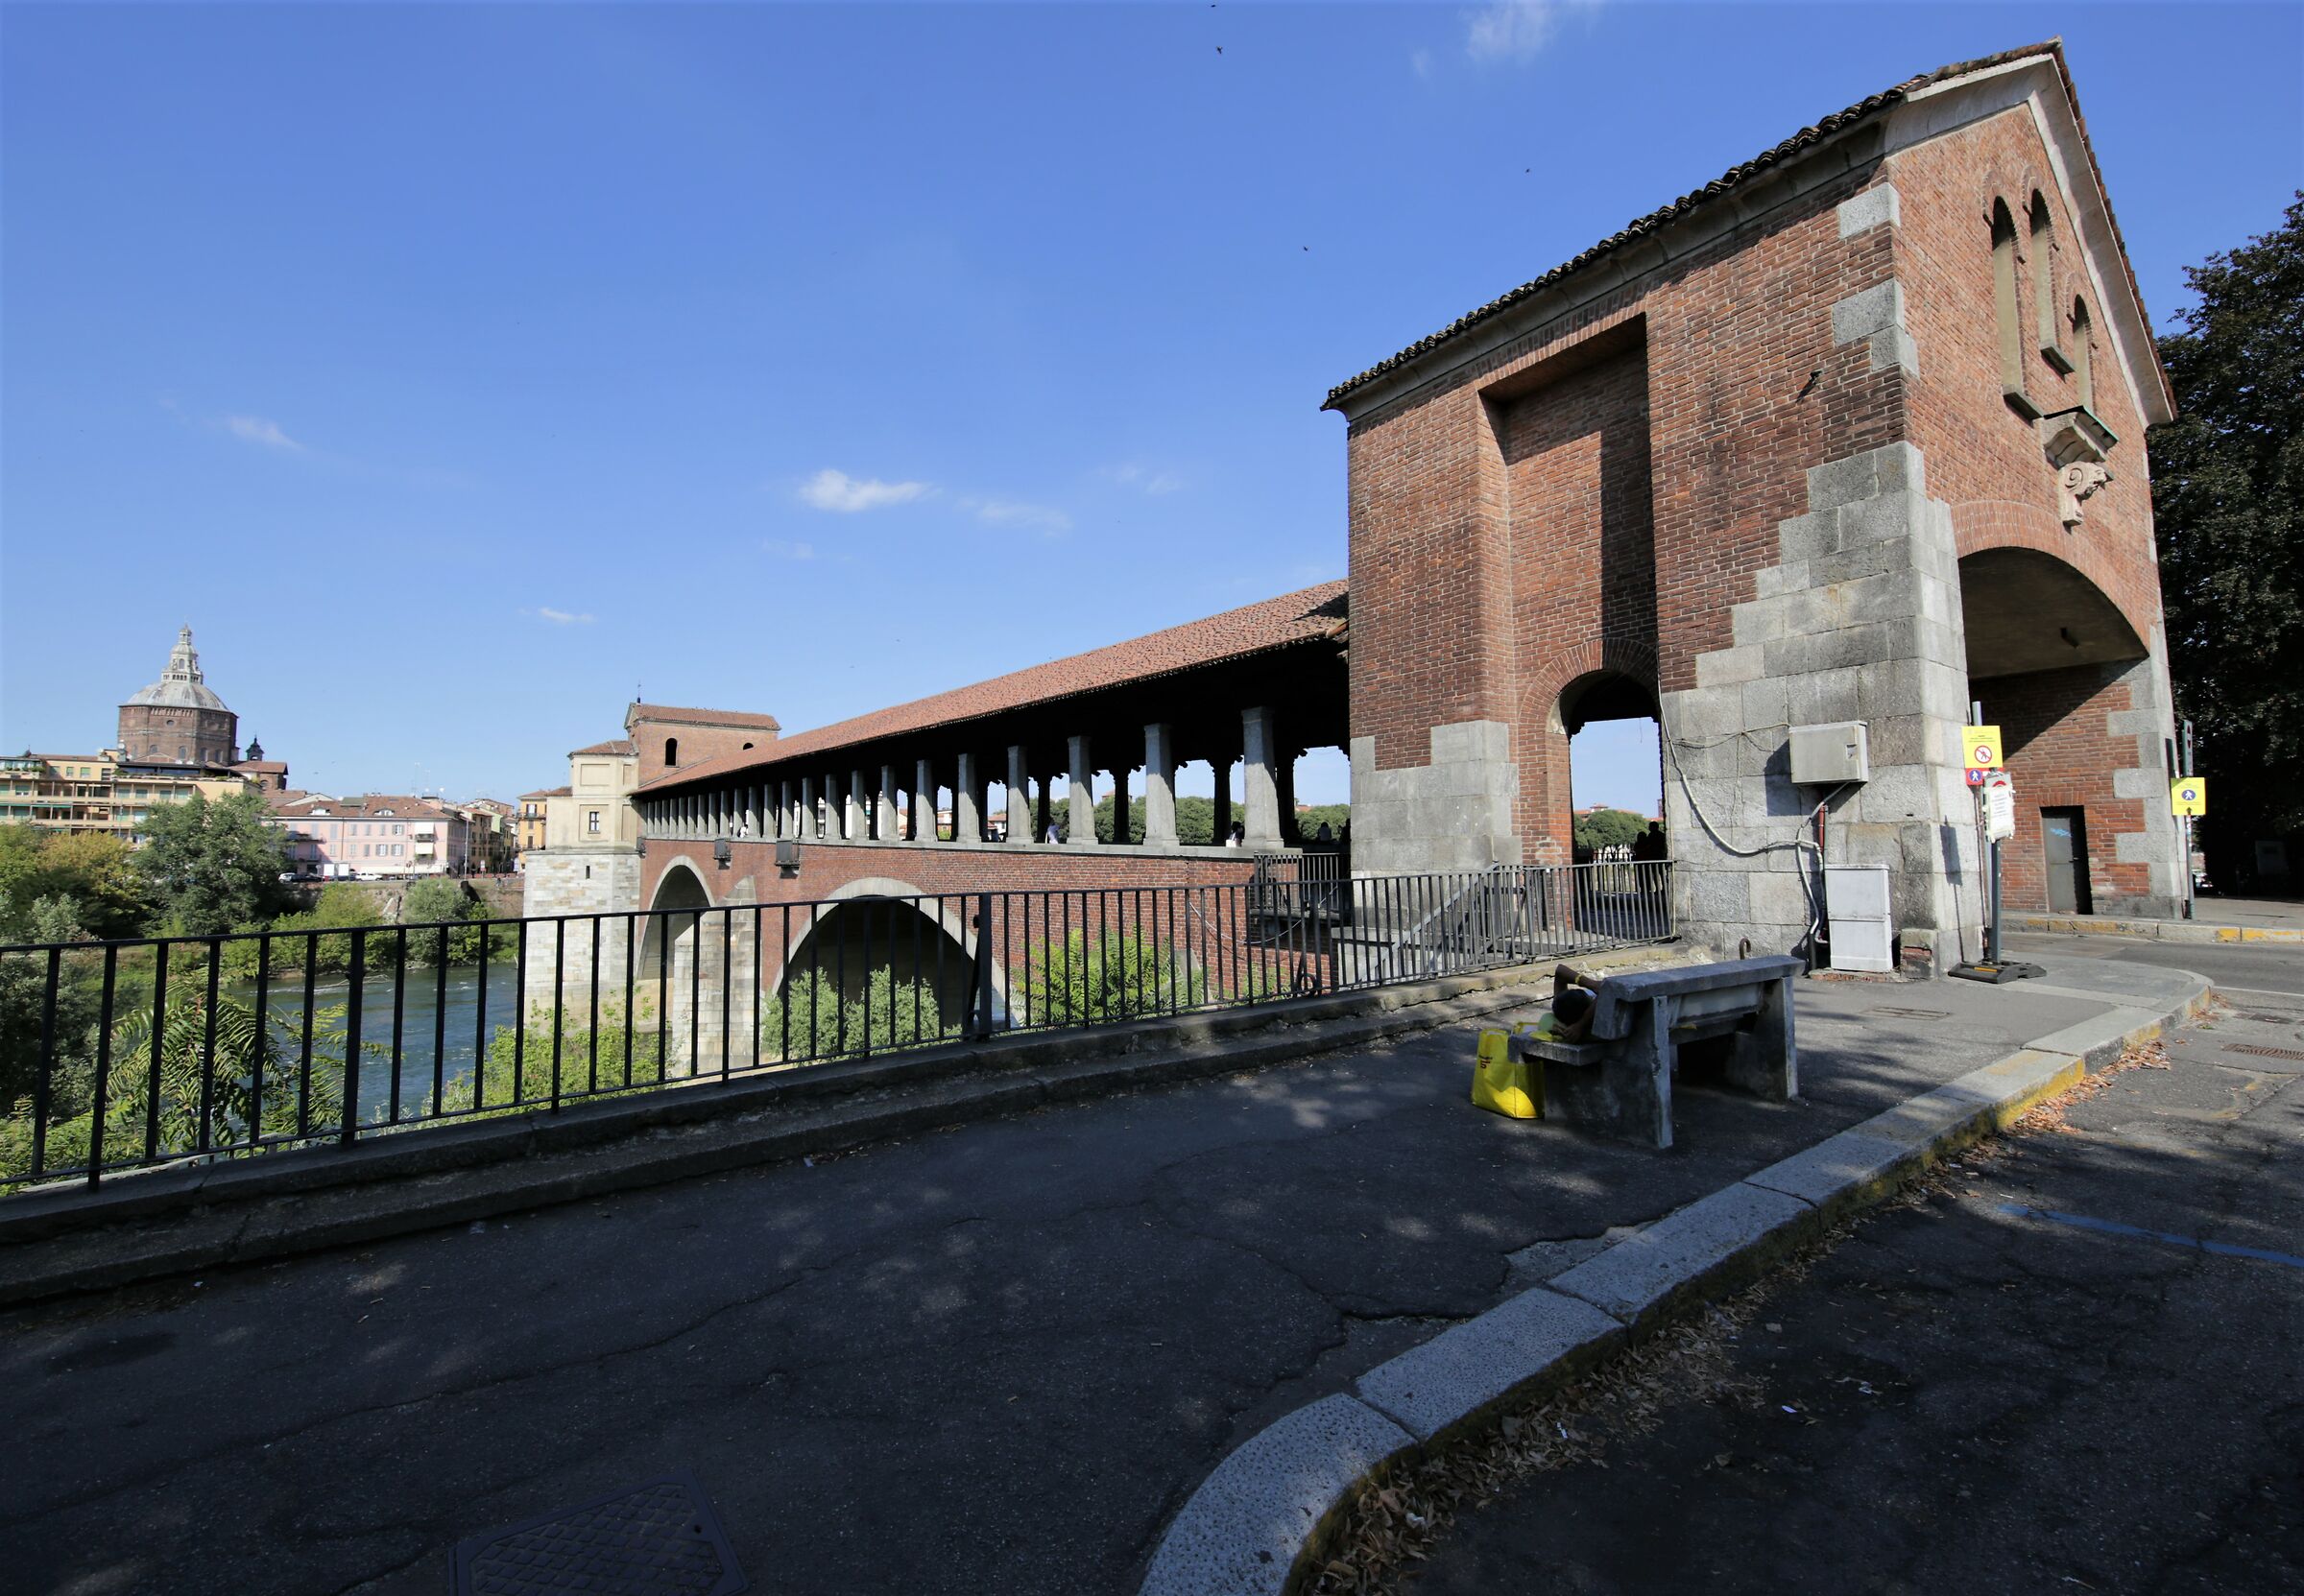 This Bridge is not Street Pavia is Laaarg...